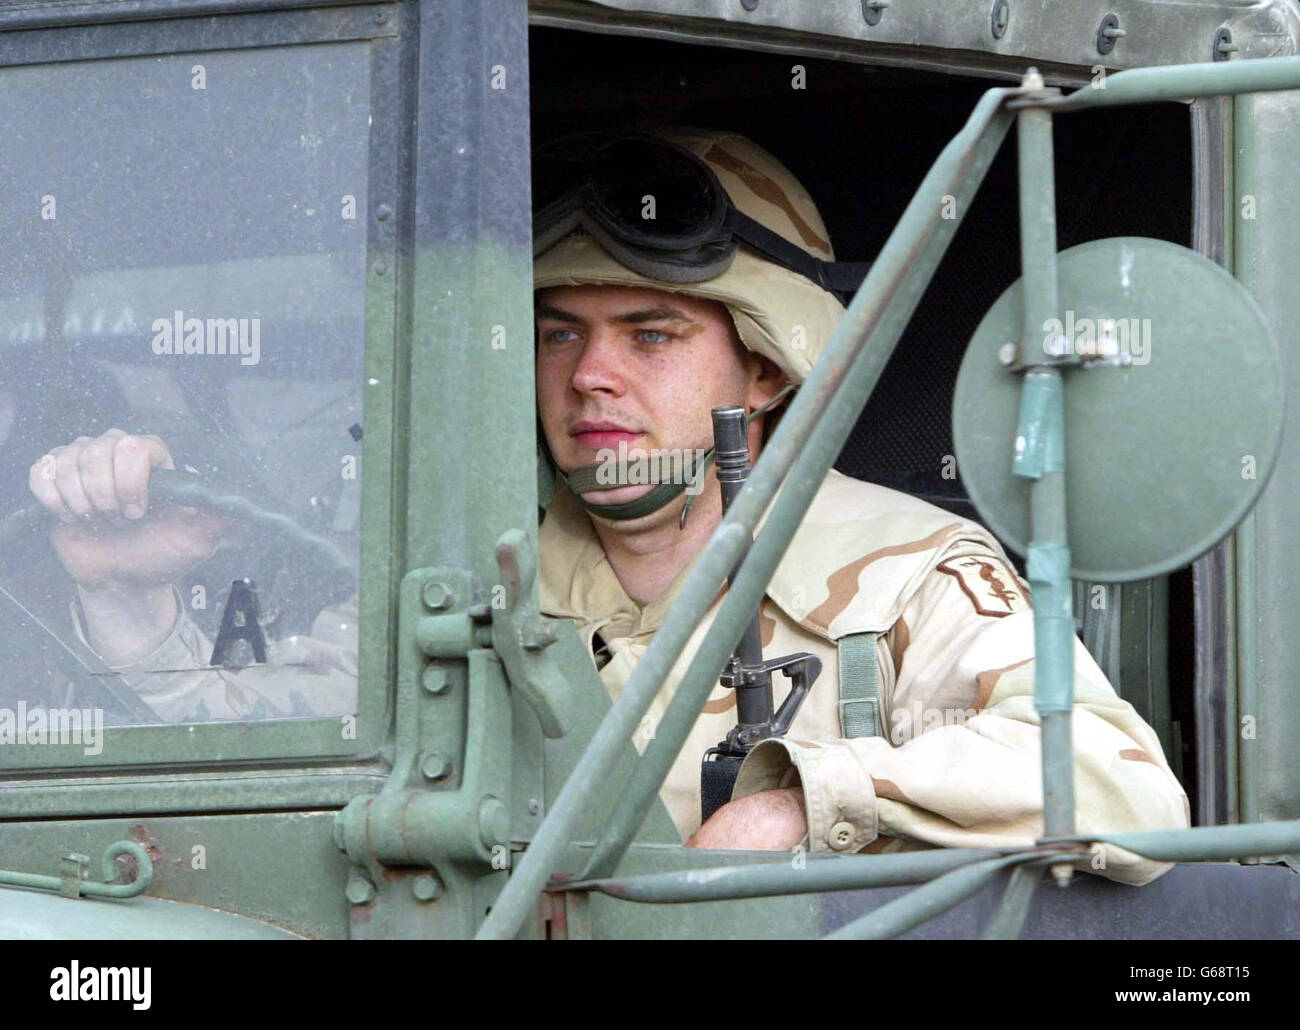 Amerikanische Streitkräfte in Kuwait. Amerikanische Truppen auf dem Weg zwischen Jahra und Salmy, West-Kuwait in der Nähe der Grenze zum Irak. Stockfoto